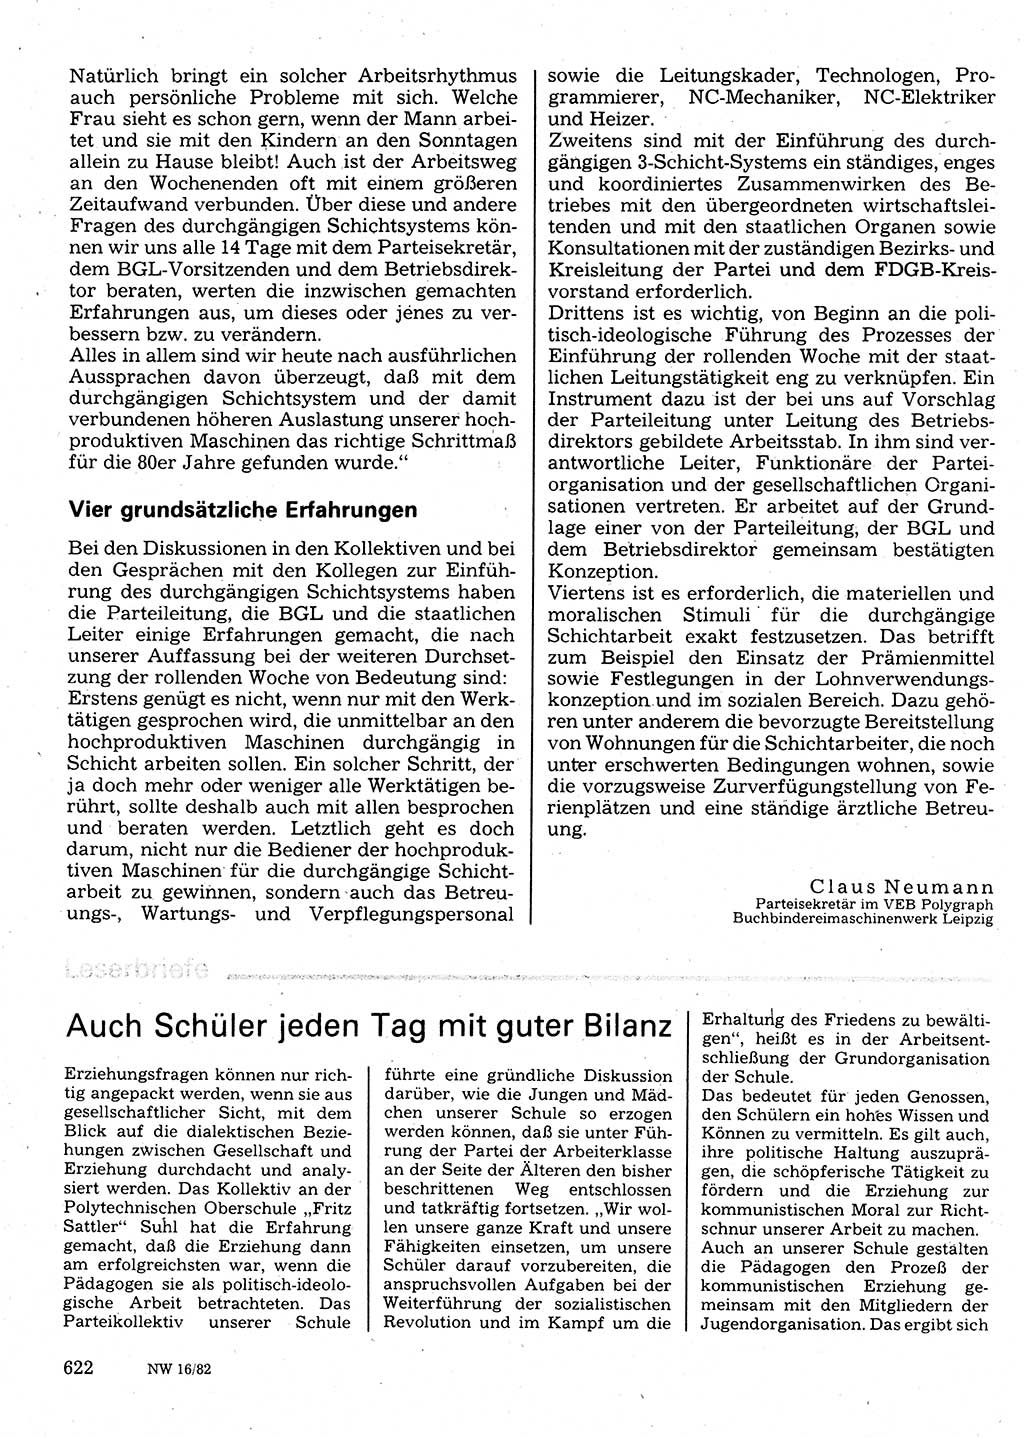 Neuer Weg (NW), Organ des Zentralkomitees (ZK) der SED (Sozialistische Einheitspartei Deutschlands) für Fragen des Parteilebens, 37. Jahrgang [Deutsche Demokratische Republik (DDR)] 1982, Seite 622 (NW ZK SED DDR 1982, S. 622)